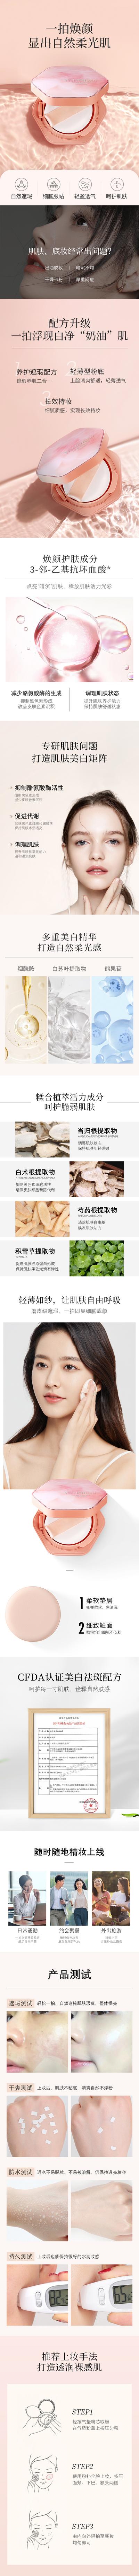 南门网 广告 海报 电商 气垫 化妆品 详情页 长图 介绍